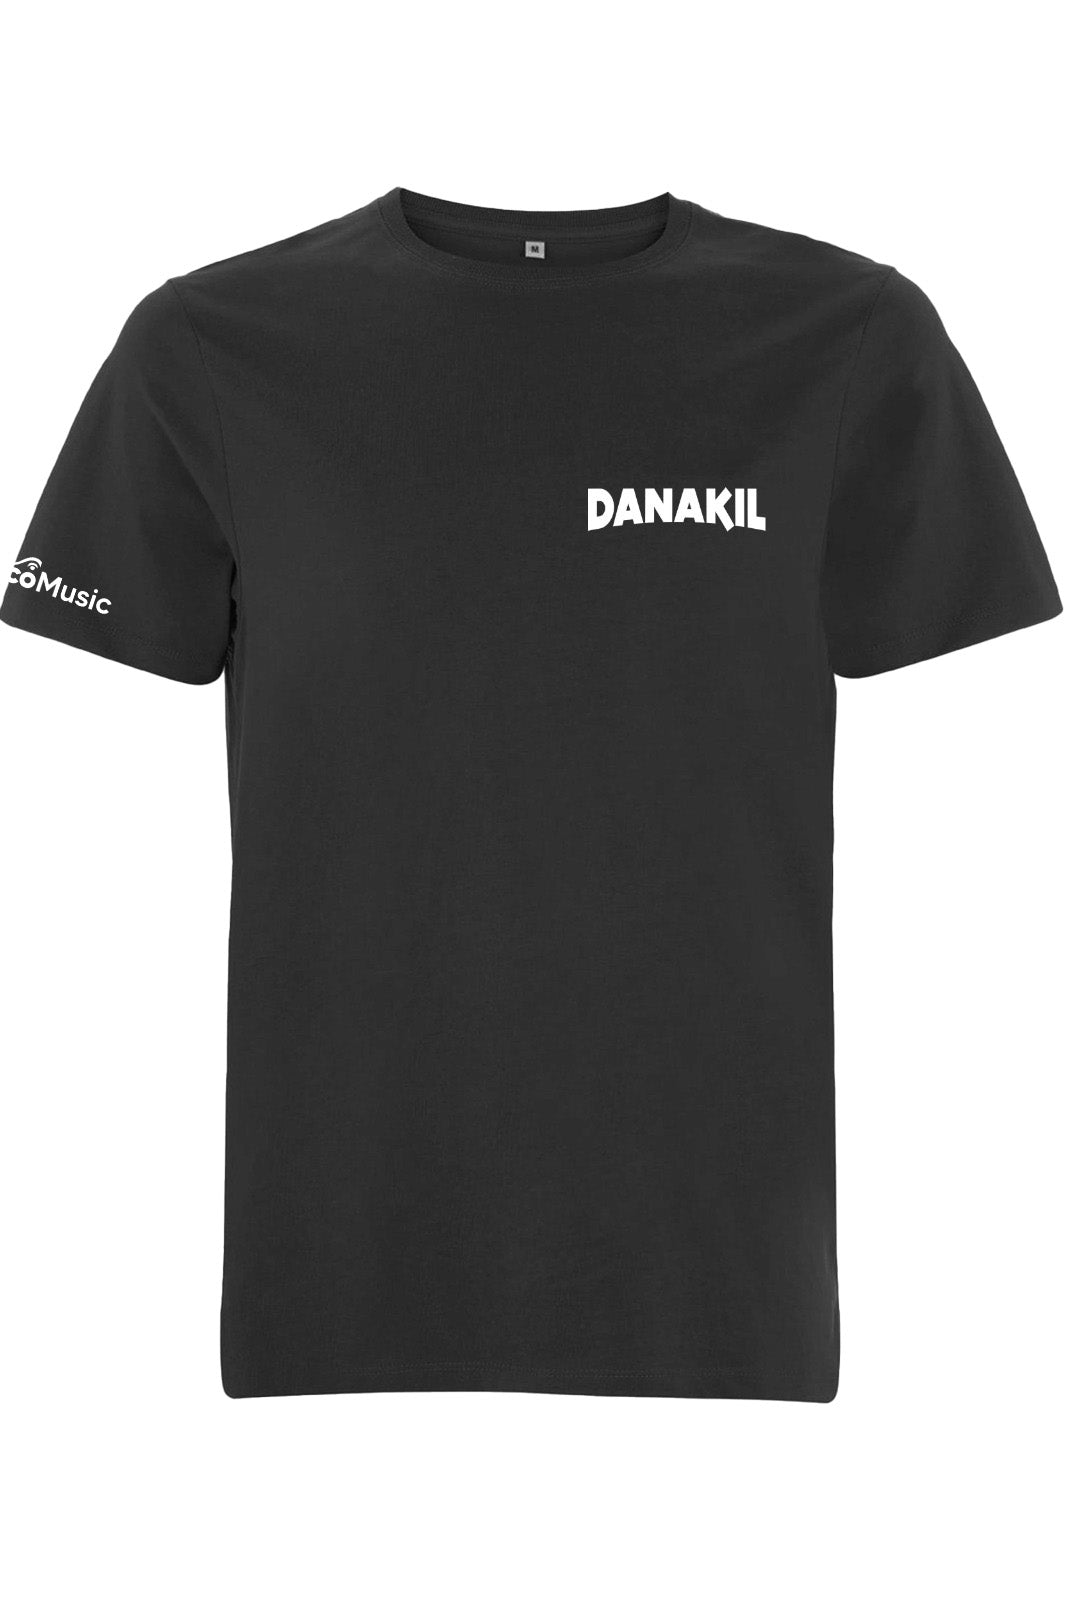 Danakil - T-Shirt Rasta au dos